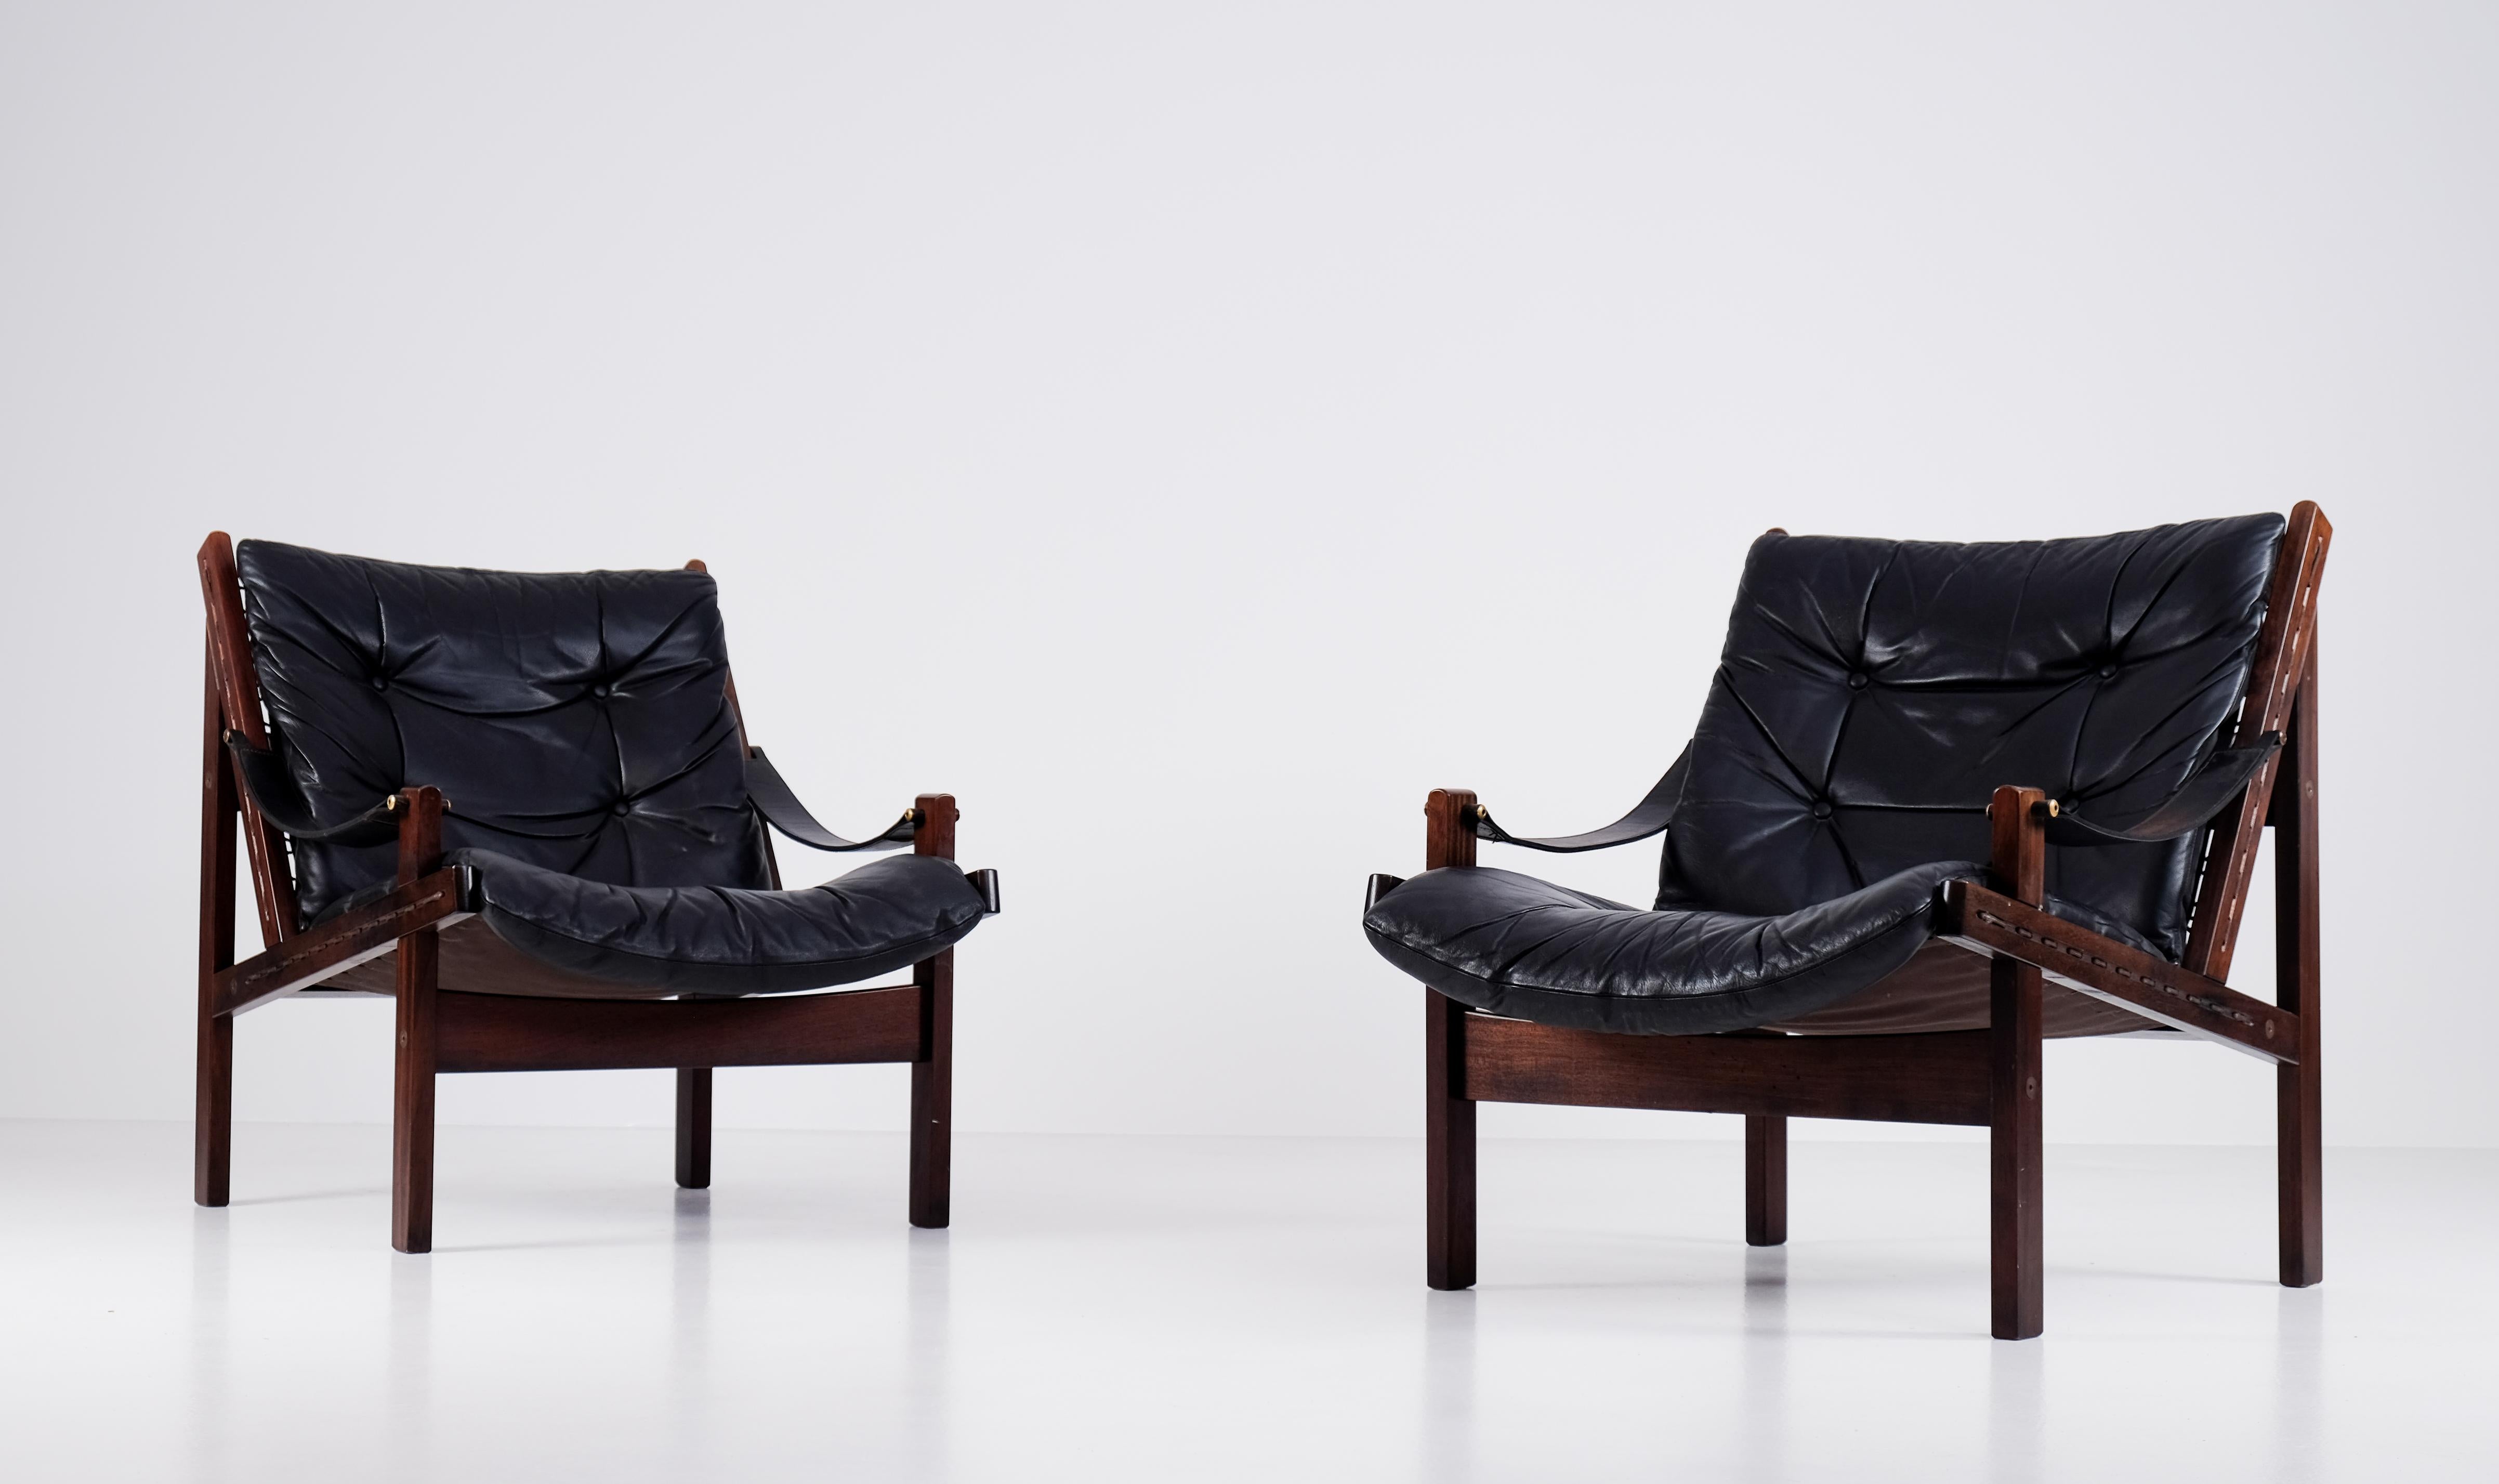 Tolles Paar Safaristühle Modell Hunter entworfen von Torbjørn Afdal, hergestellt von Bruksbo. Original schwarze Lederkissen und -riemen. Sehr guter Zustand. 



